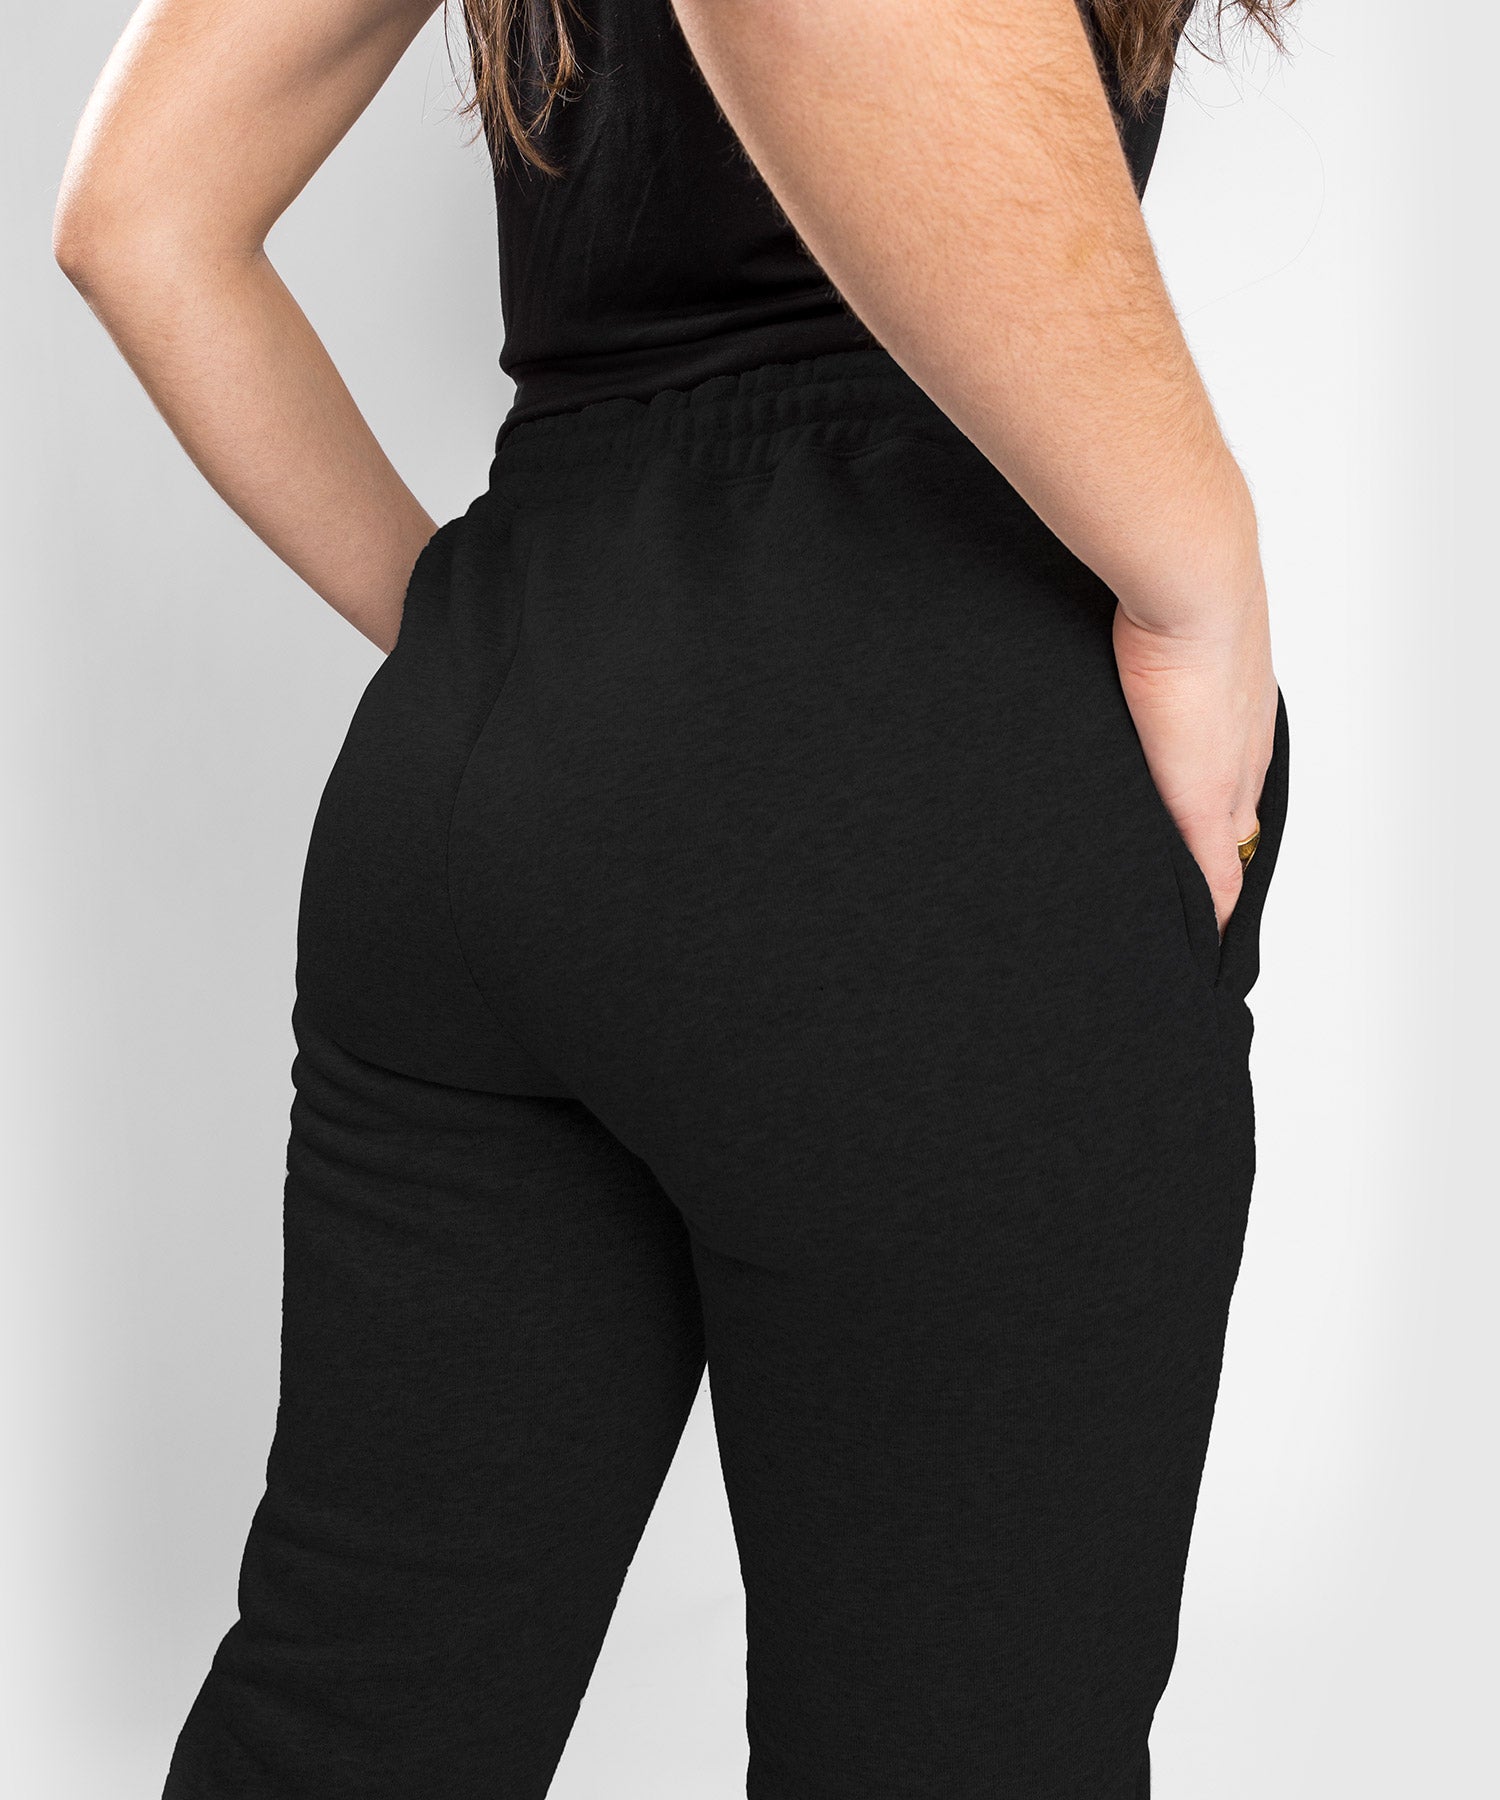 Pantalon jogging fitness femme coton coupe droite sans poche - 120 noi